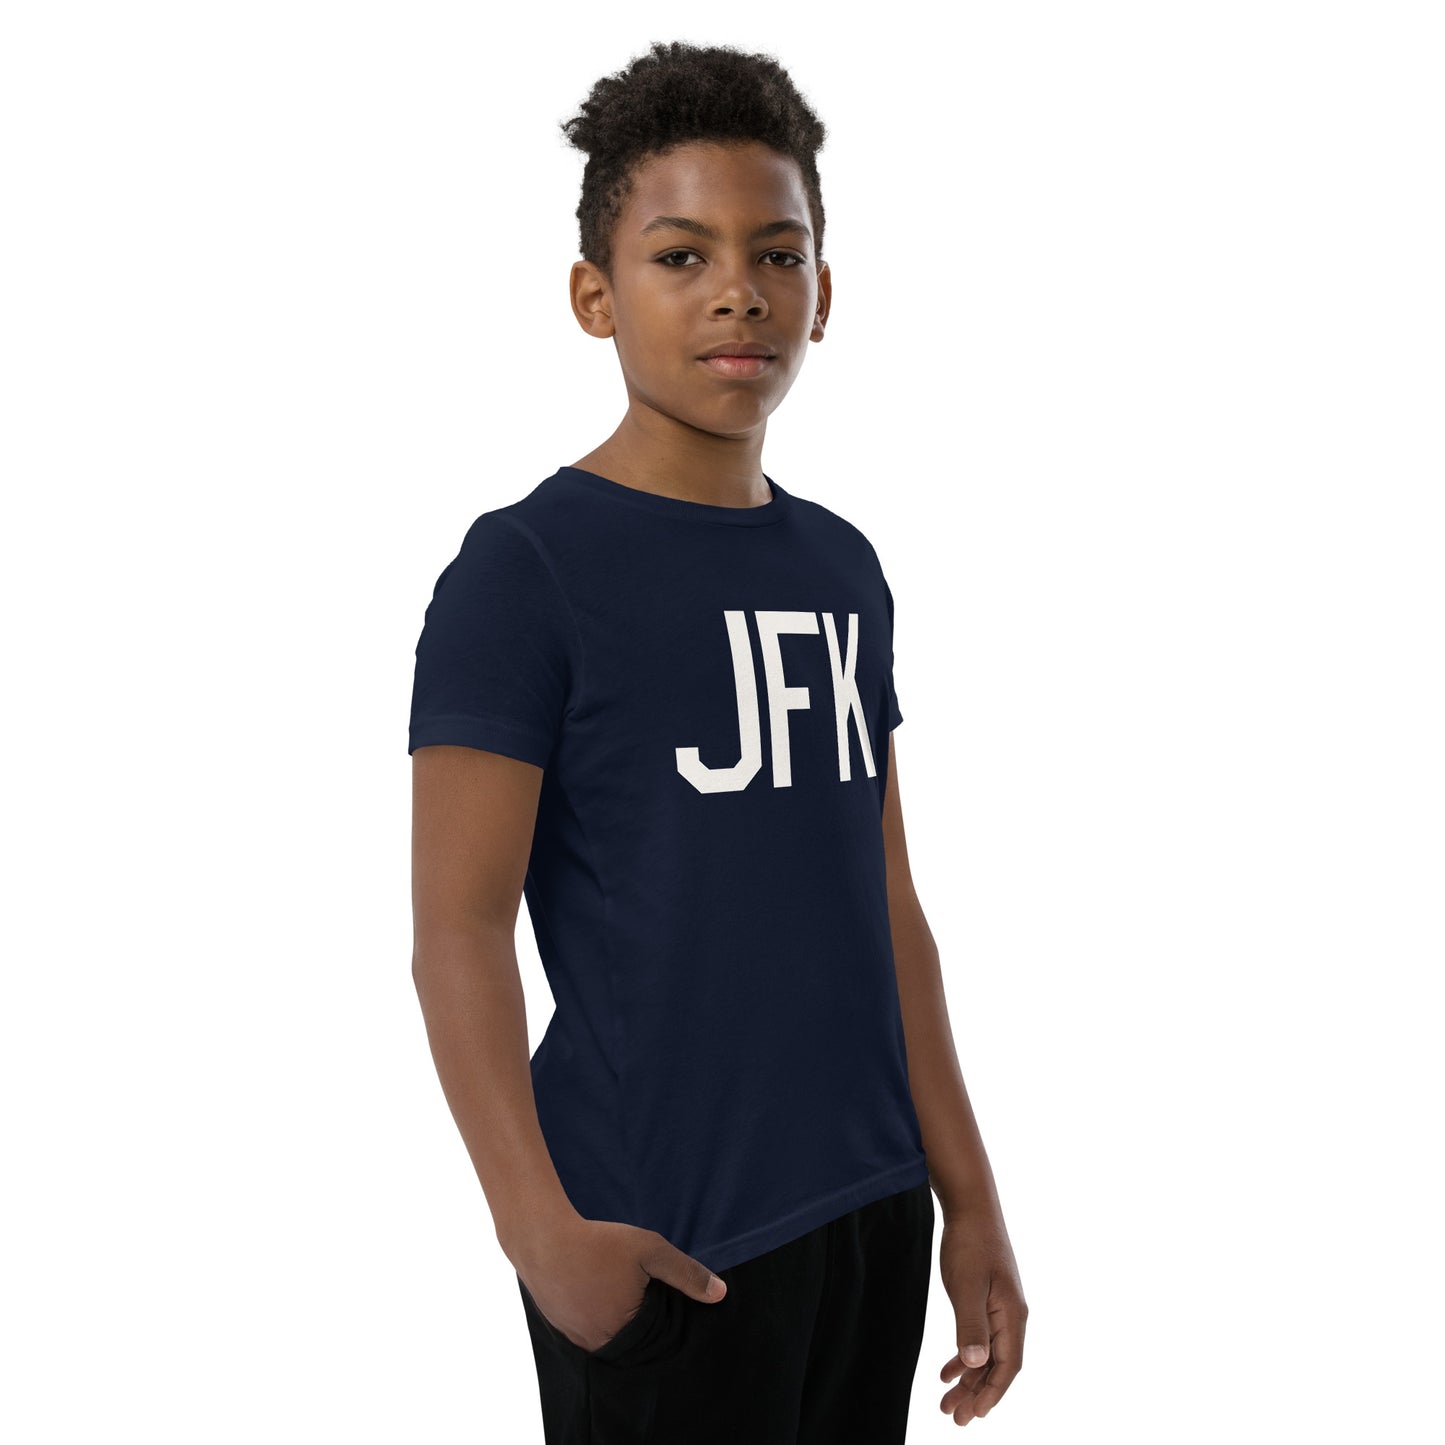 Kid's T-Shirt - White Graphic • JFK New York • YHM Designs - Image 08